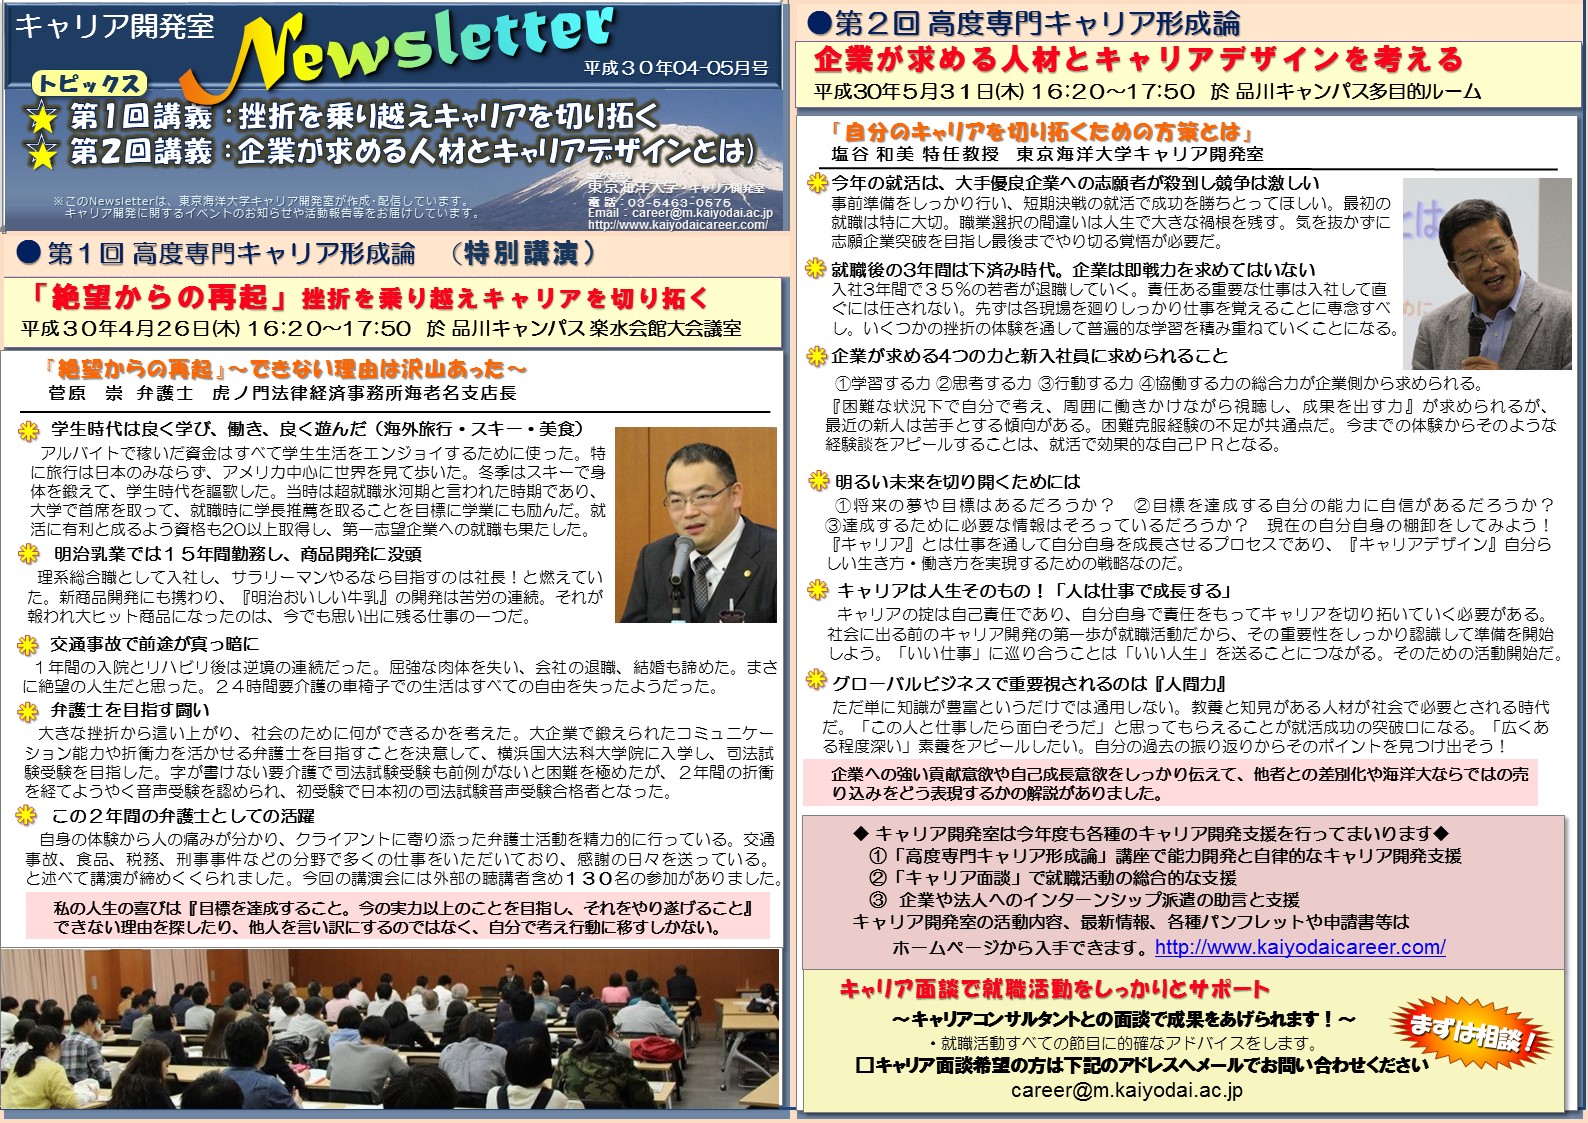 https://www3.kaiyodai.ac.jp/career/img/Newsletter_20180531%20%28002%29.jpg